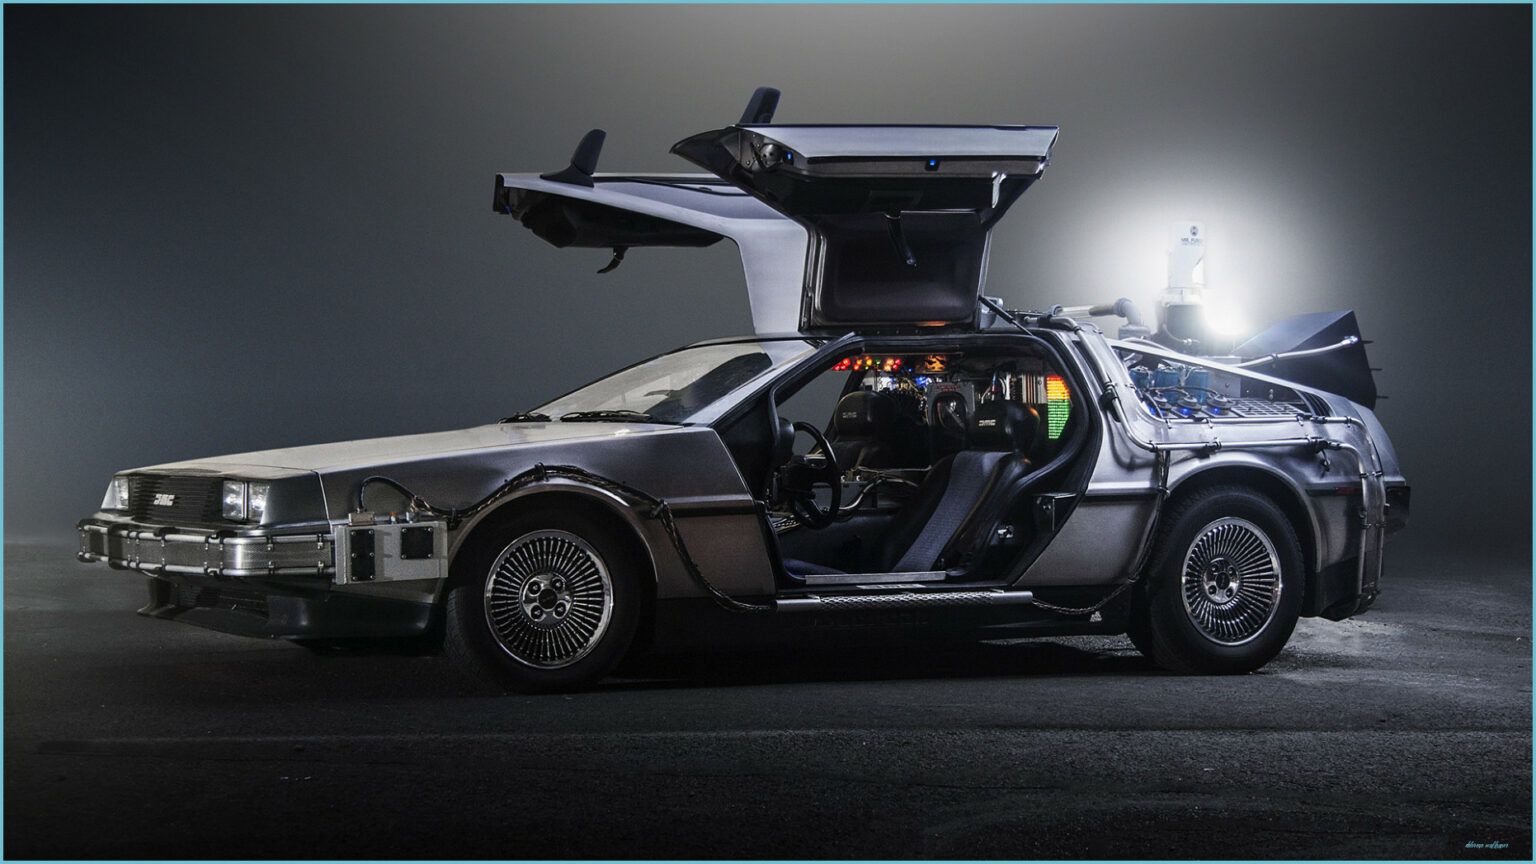 DeLorean DMC 14 'Back To The Future' Wallpaper, Specs